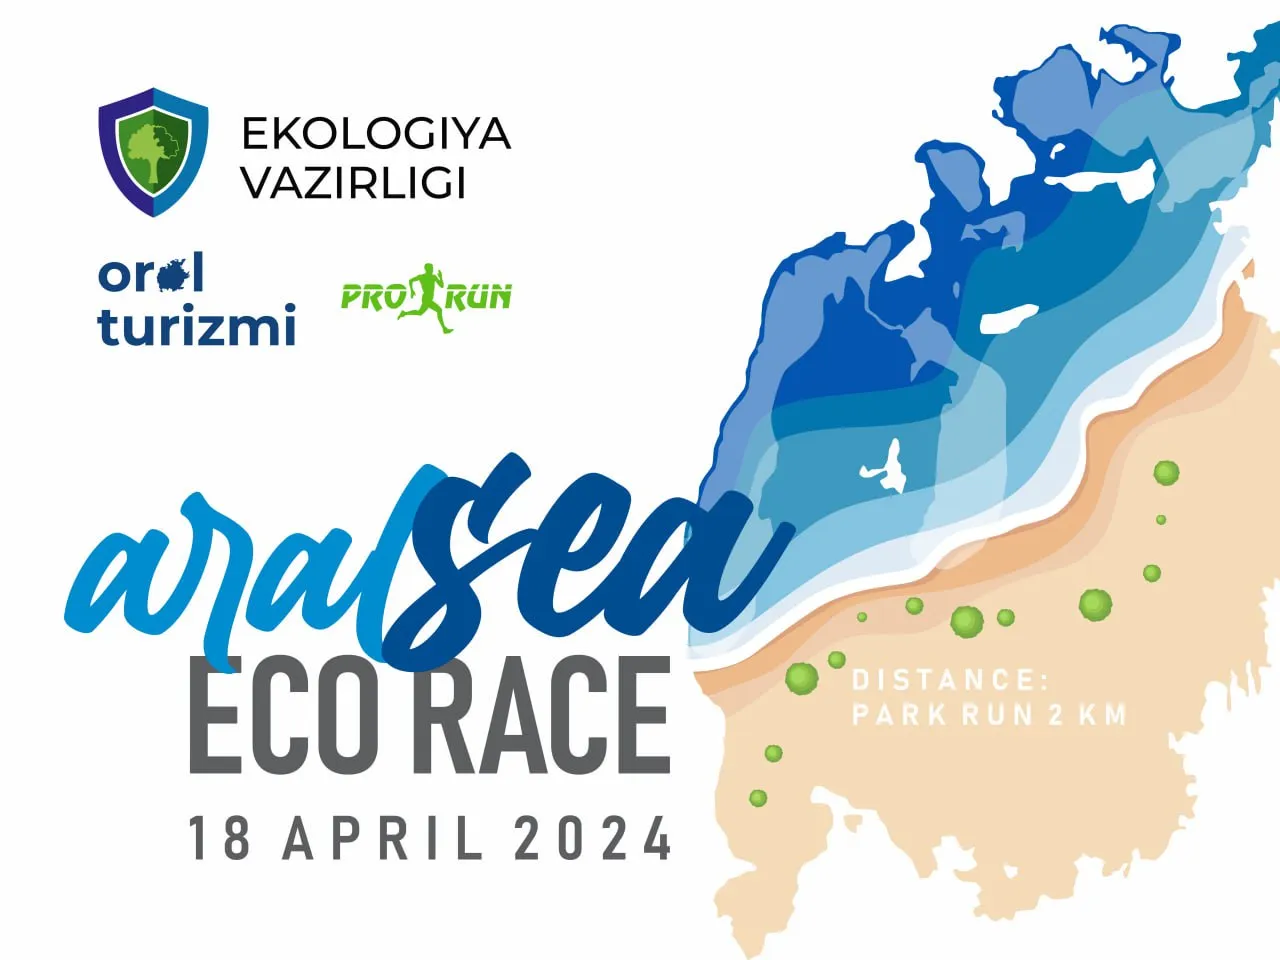 
											
											Қорақалпоғистонда “Aral Sea Eco Race” эко-марафони ўтказилади
											
											